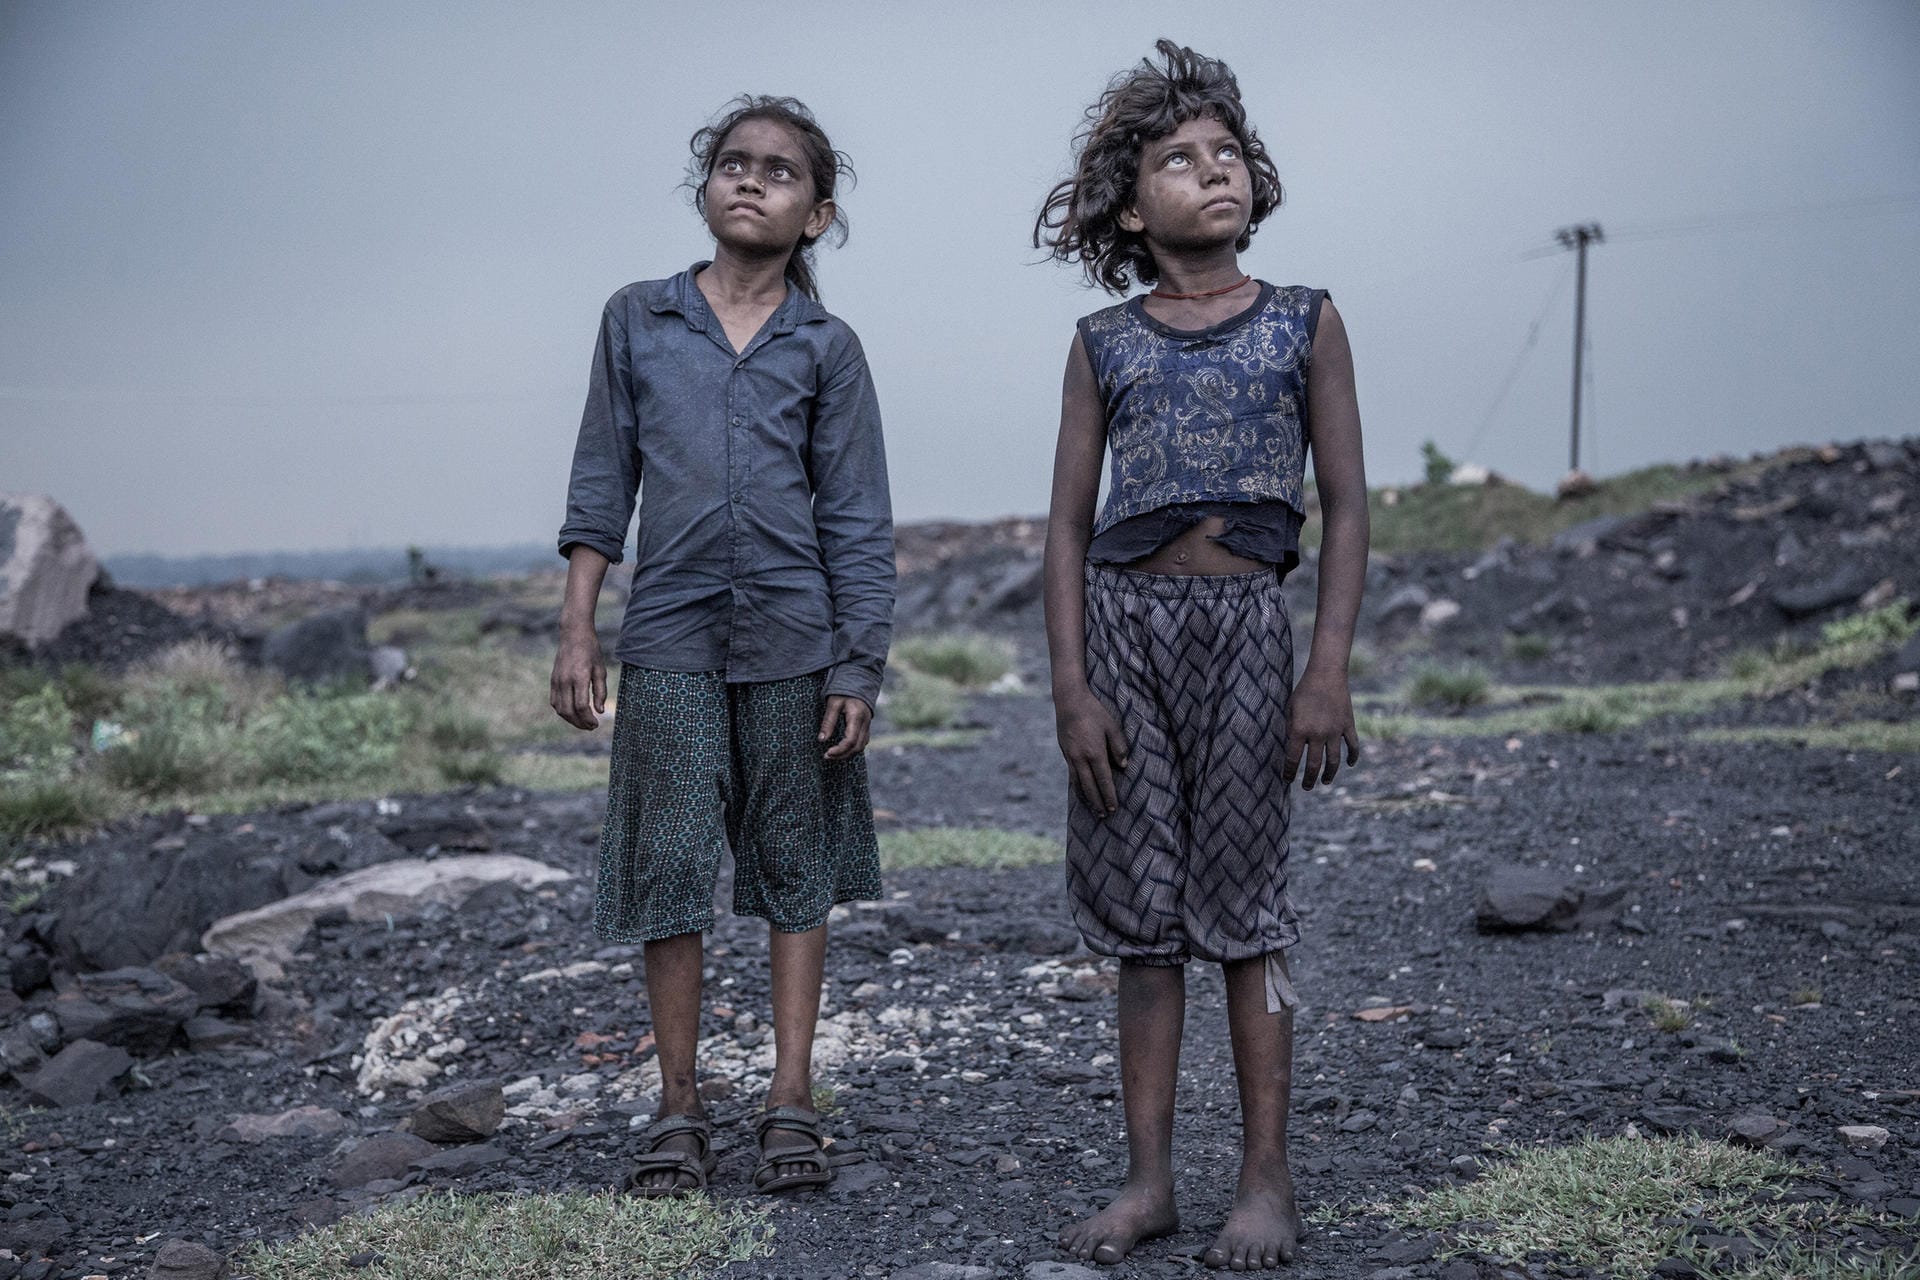 Der indische Fotograf Supratim Bhattacharjee erhielt den zweiten Preis. Sein Bild zeigt zwei Mädchen, unterernährt und erschöpft. Sie sind zwei von vielen Kindern, die auf Asiens größten Kohlefeldern arbeiten. Diese liegen in Jharia im indischen Bundesstaat Jharkhand. Am Ende des Tages erhalten die Mädchen für ihre Arbeit einen Lohn von umgerechnet zwei US-Dollar. Genügend Nahrung, sauberes Trinkwasser oder gar Schulbildung bekommen sie davon nicht.